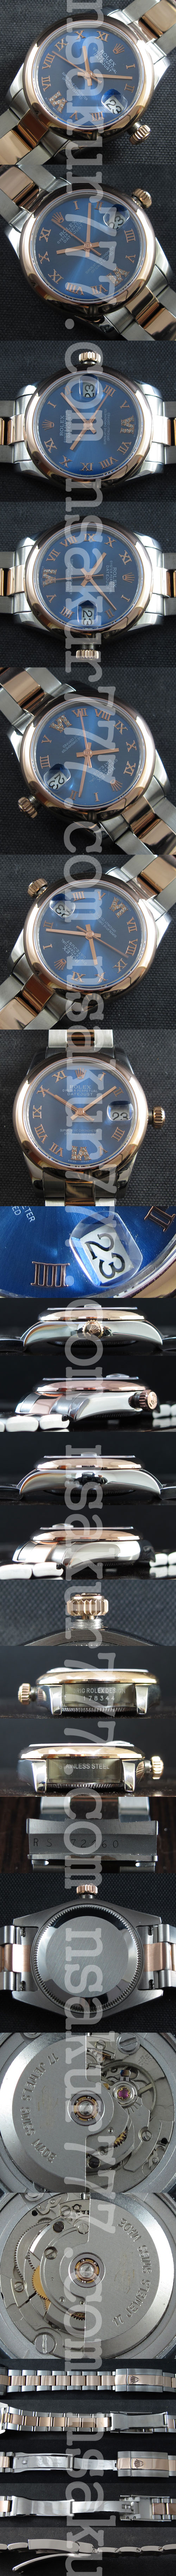 【おすすめ商品】ロレックスデイトジャストミディアム多機能腕時計